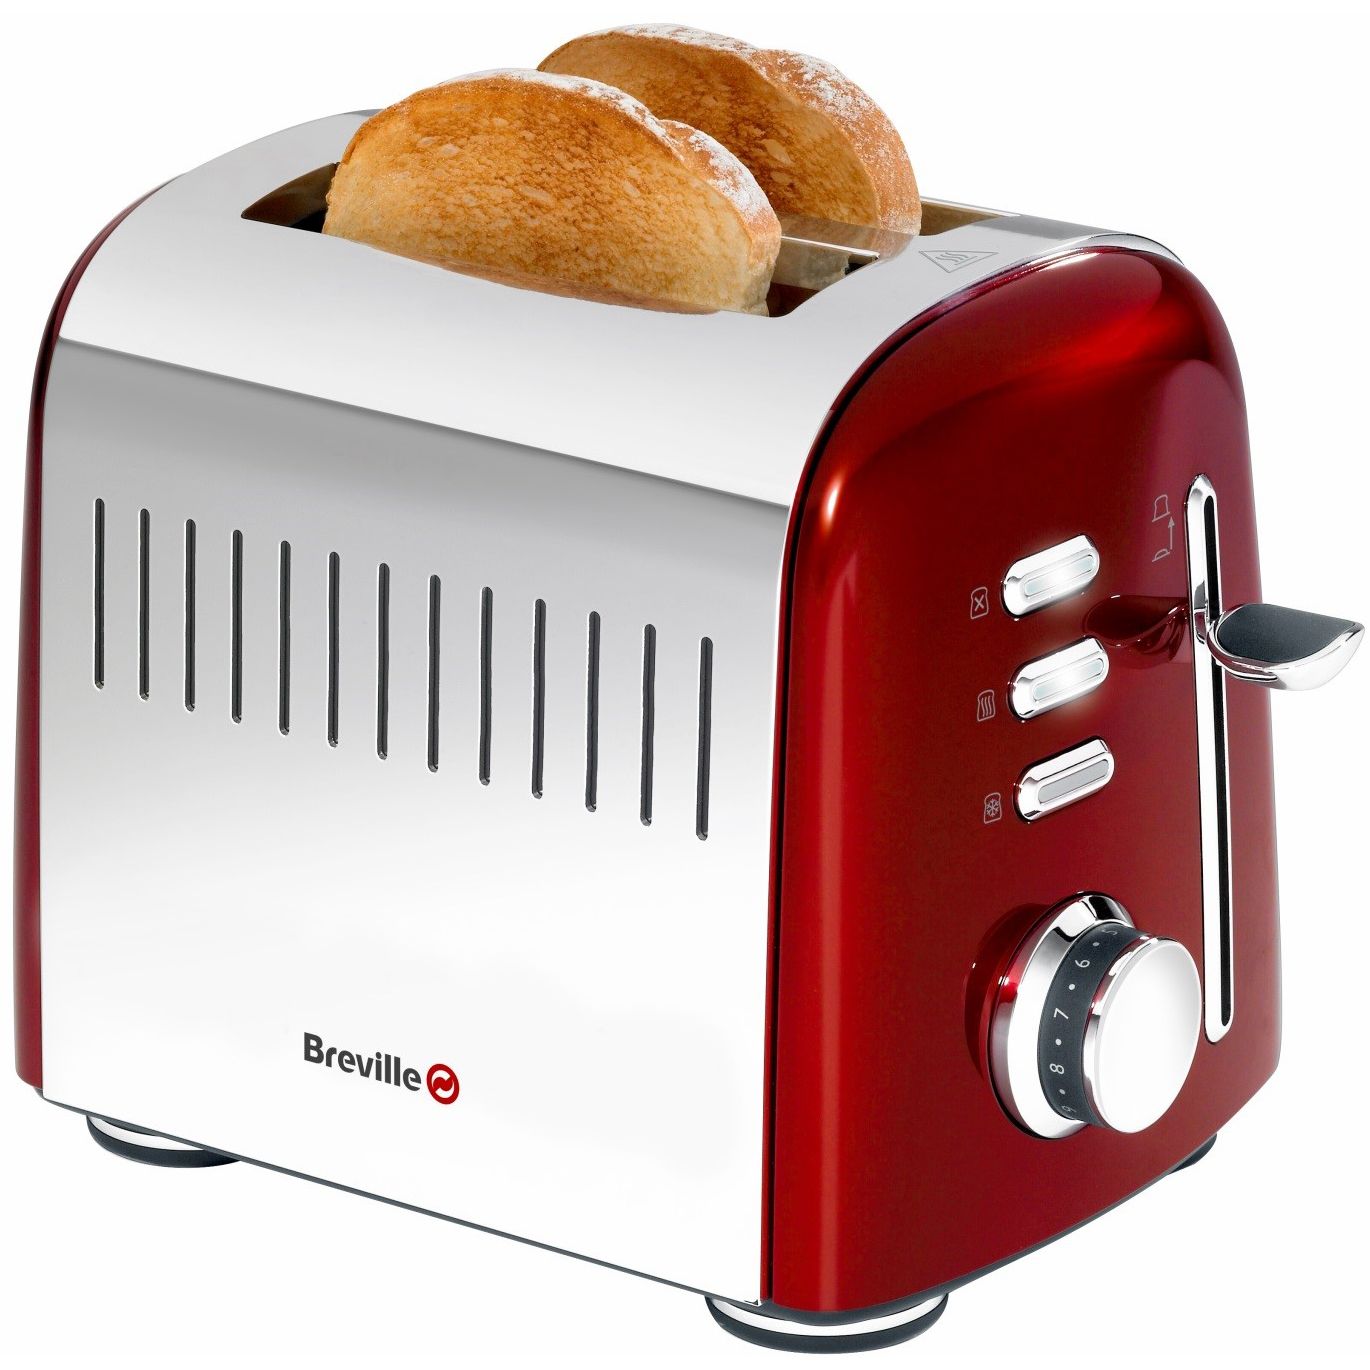  Prajitor de paine Breville VTT513X-01, 850 W, 2 felii de paine, Argintiu/Rosu 